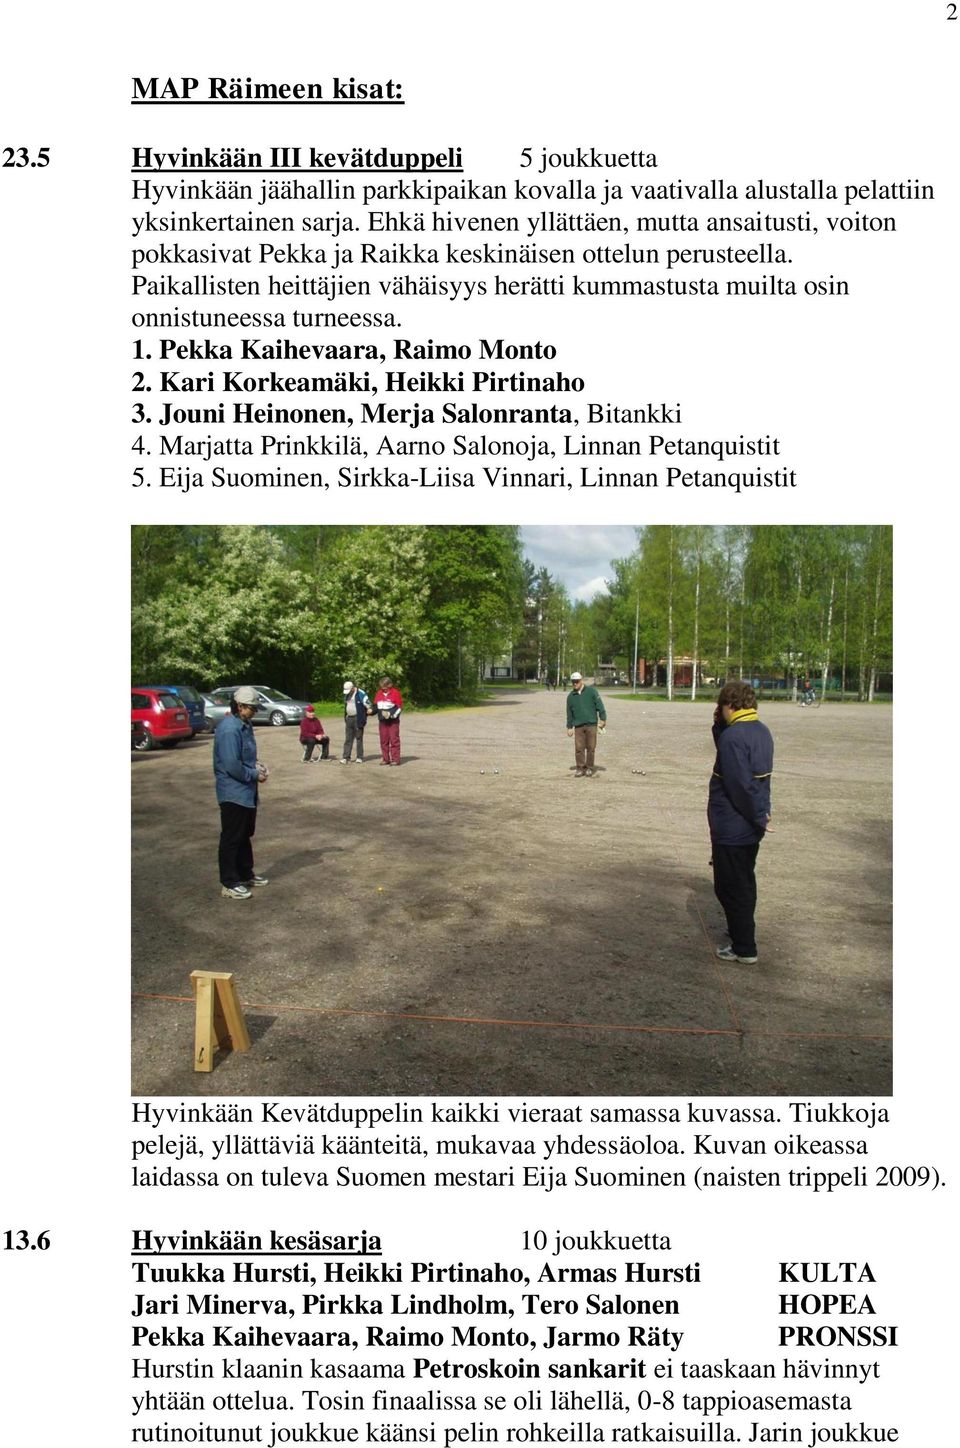 1. Pekka Kaihevaara, Raimo Monto 2. Kari Korkeamäki, Heikki Pirtinaho 3. Jouni Heinonen, Merja Salonranta, Bitankki 4. Marjatta Prinkkilä, Aarno Salonoja, Linnan Petanquistit 5.